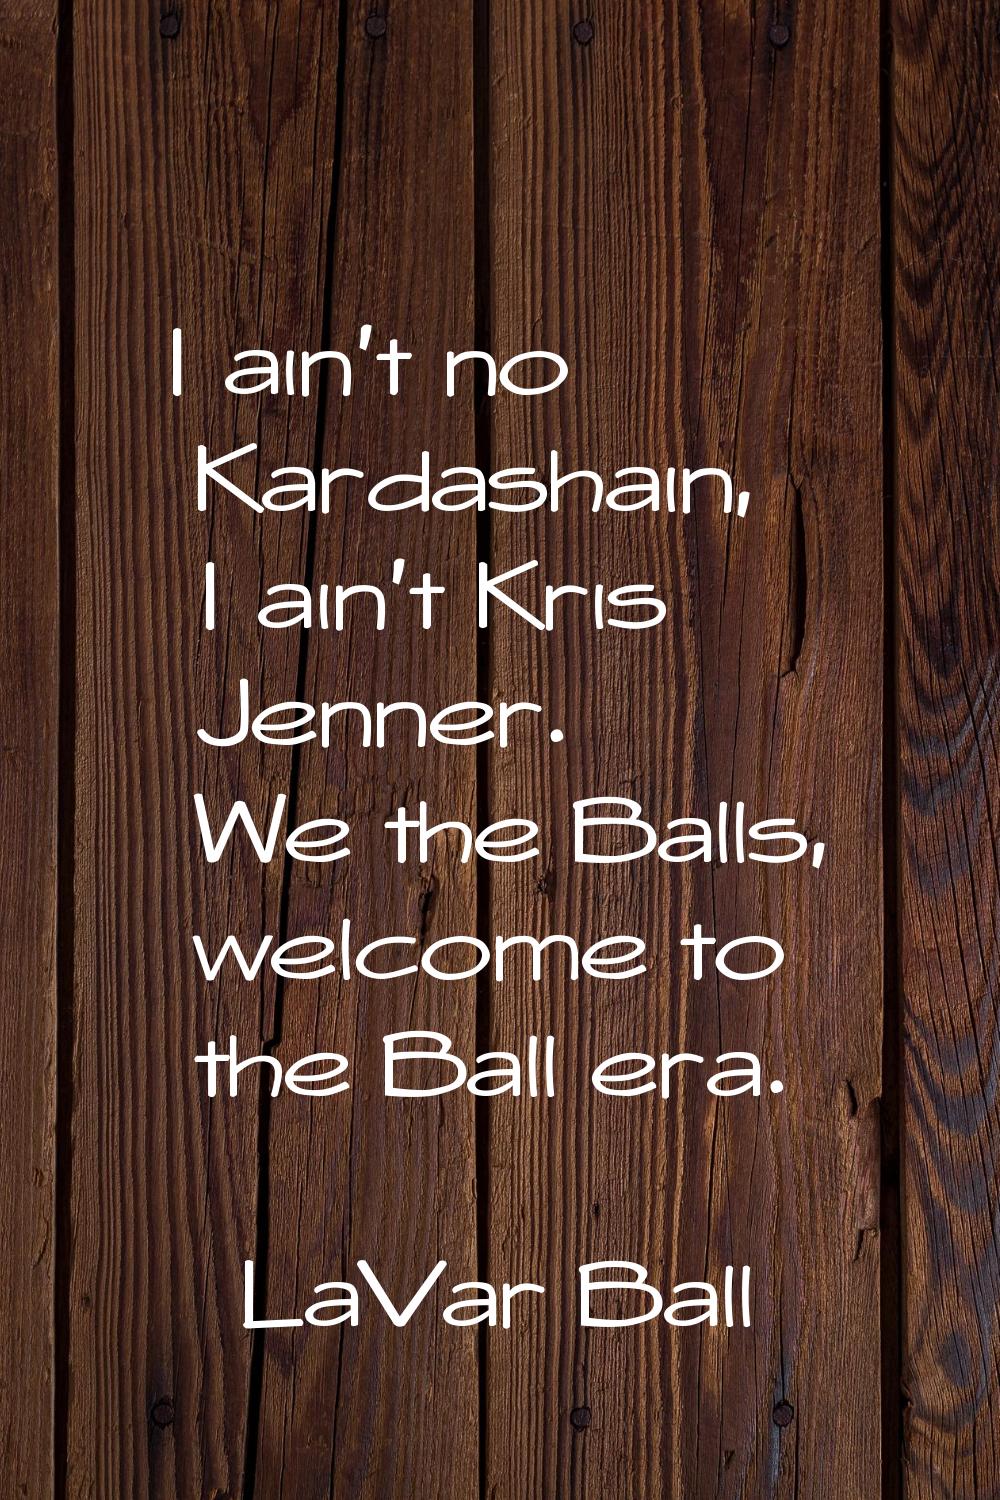 I ain't no Kardashain, I ain't Kris Jenner. We the Balls, welcome to the Ball era.